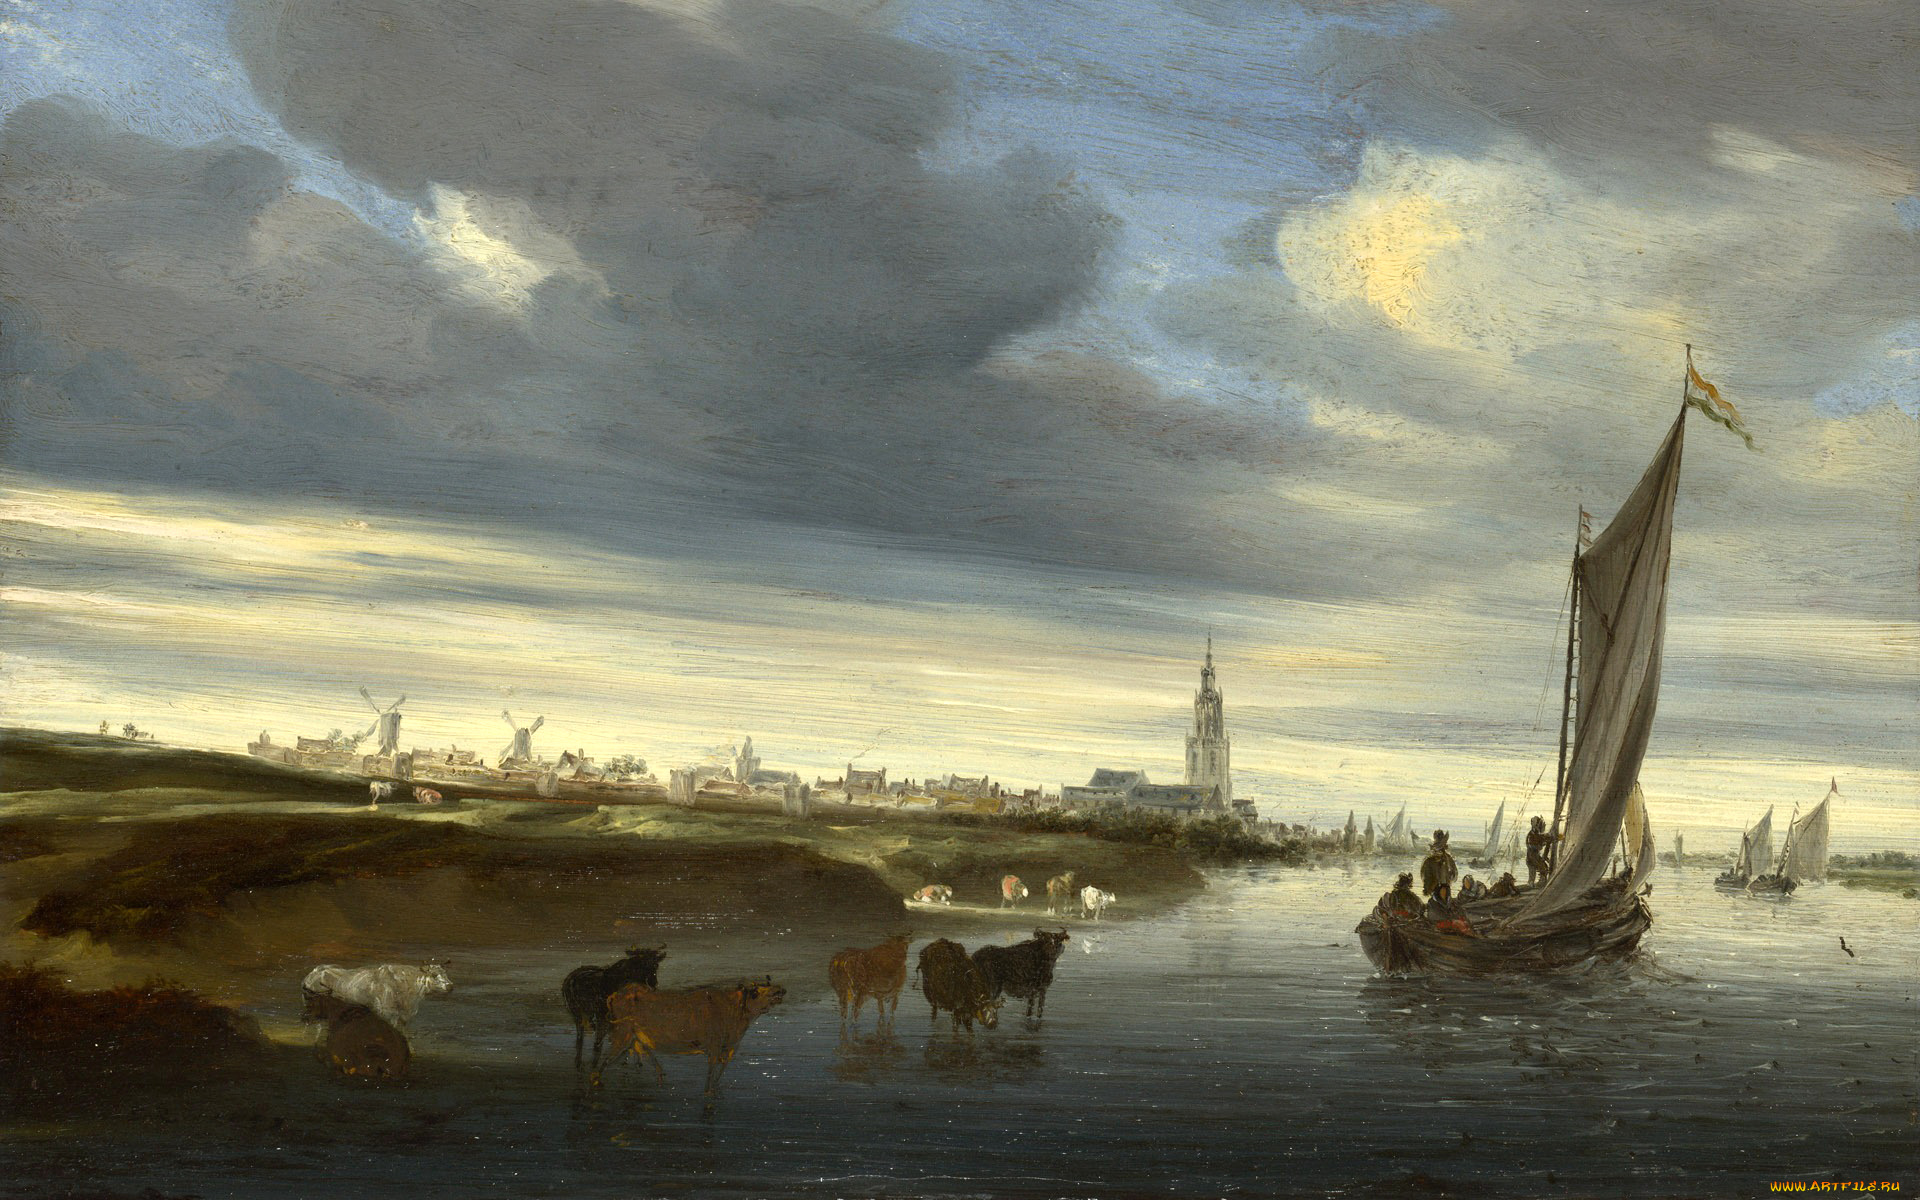 рисованное, живопись, пейзаж, канал, облака, небо, башня, мельница, парус, коровы, лодка